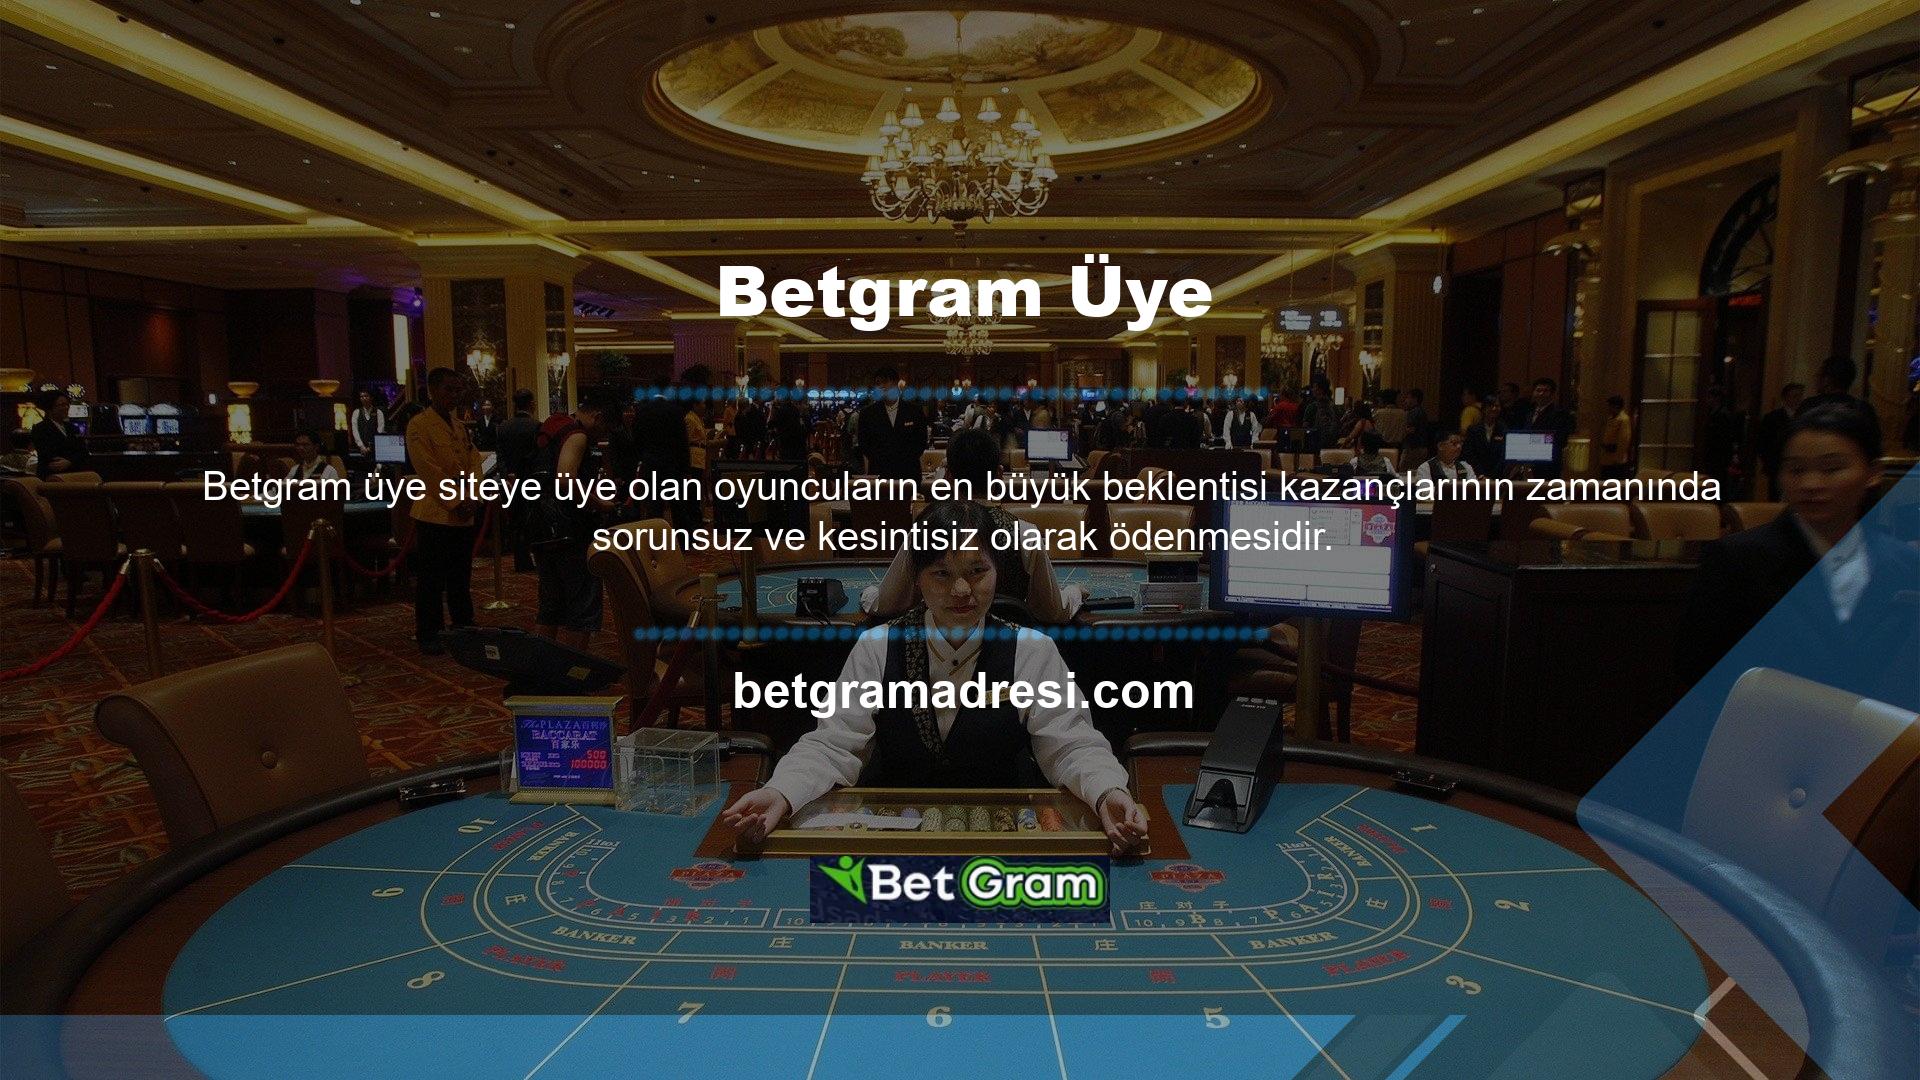 Betgram düzenli ve sorunsuz ödemelerle oyuncuların aklındaki soru işaretlerini ortadan kaldırıyor